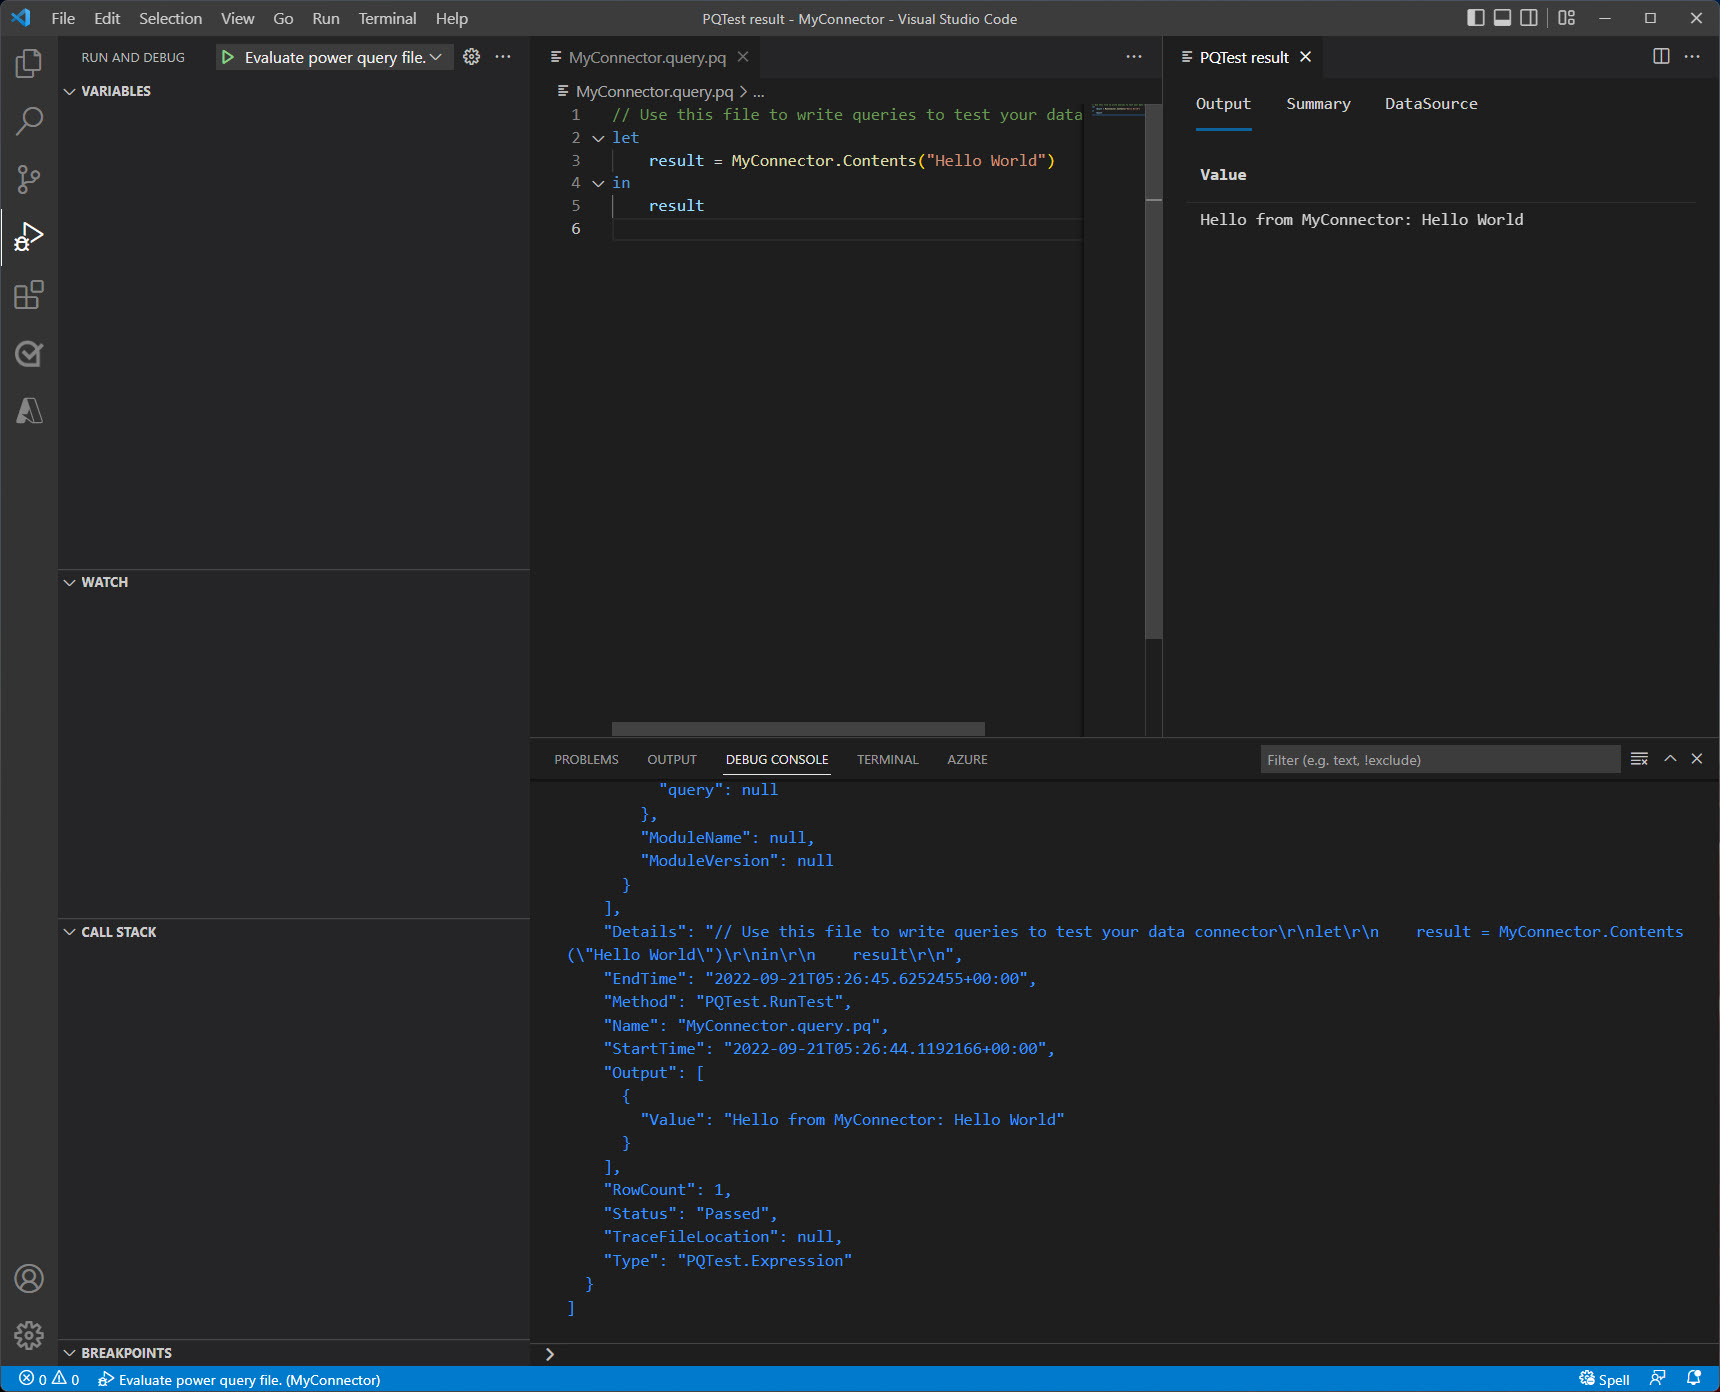 評估完成之後的Visual Studio Code 視窗會顯示主控台和結果面板中的輸出。